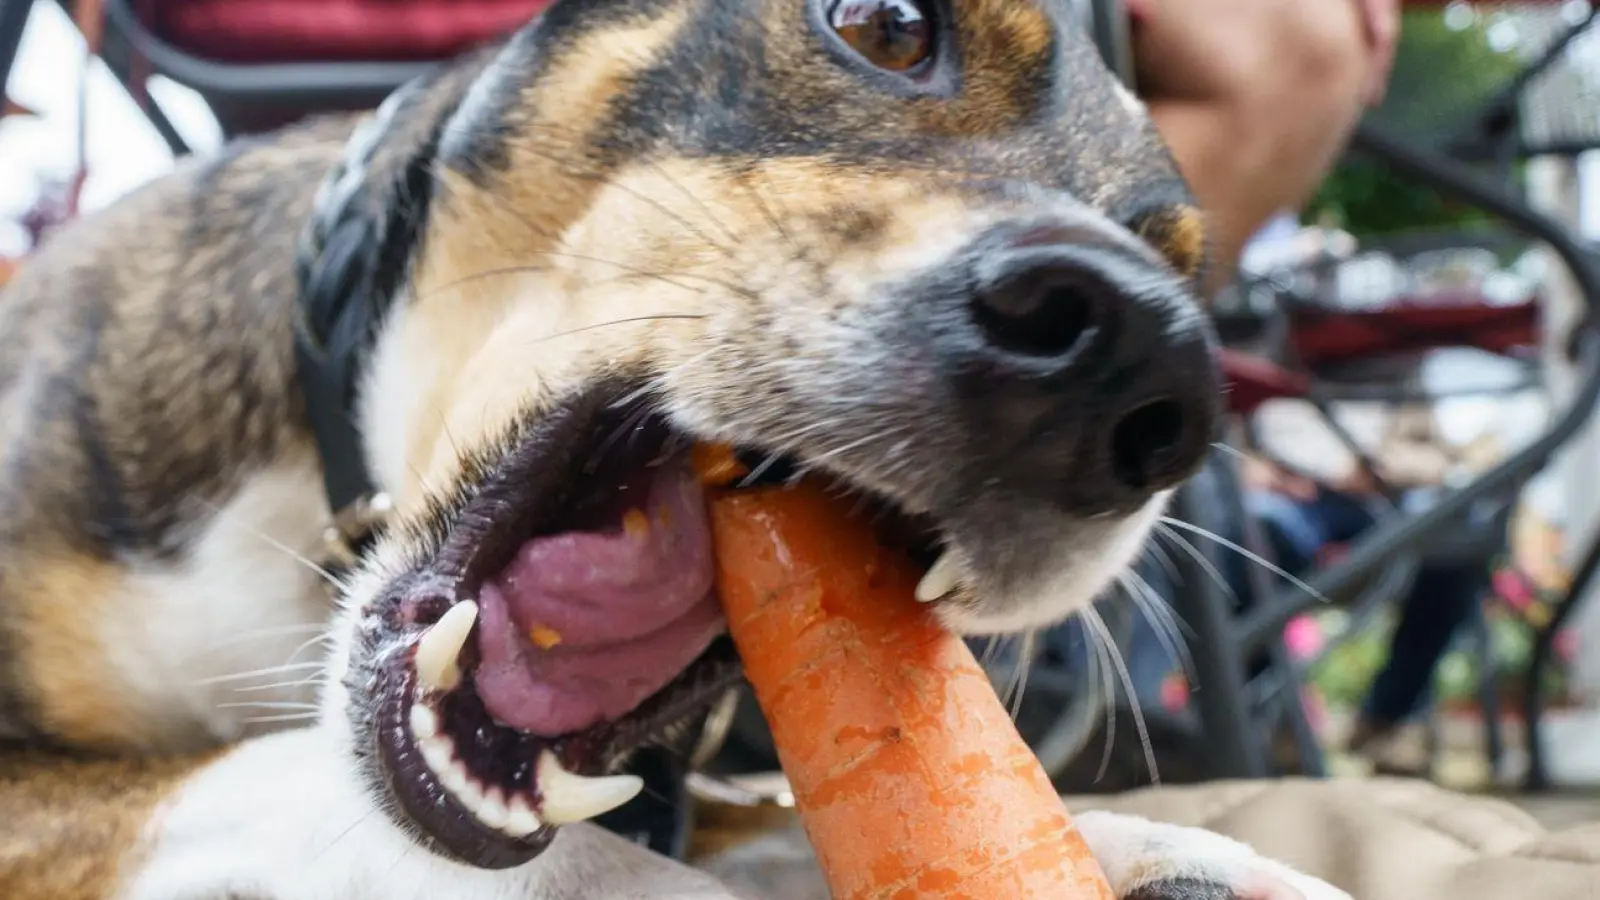 Kein Problem, wenn Hunde gerne Karotten fressen - Gemüse ist bis auf einige Ausnahmen unbedenklich. (Foto: Frank Rumpenhorst/dpa)